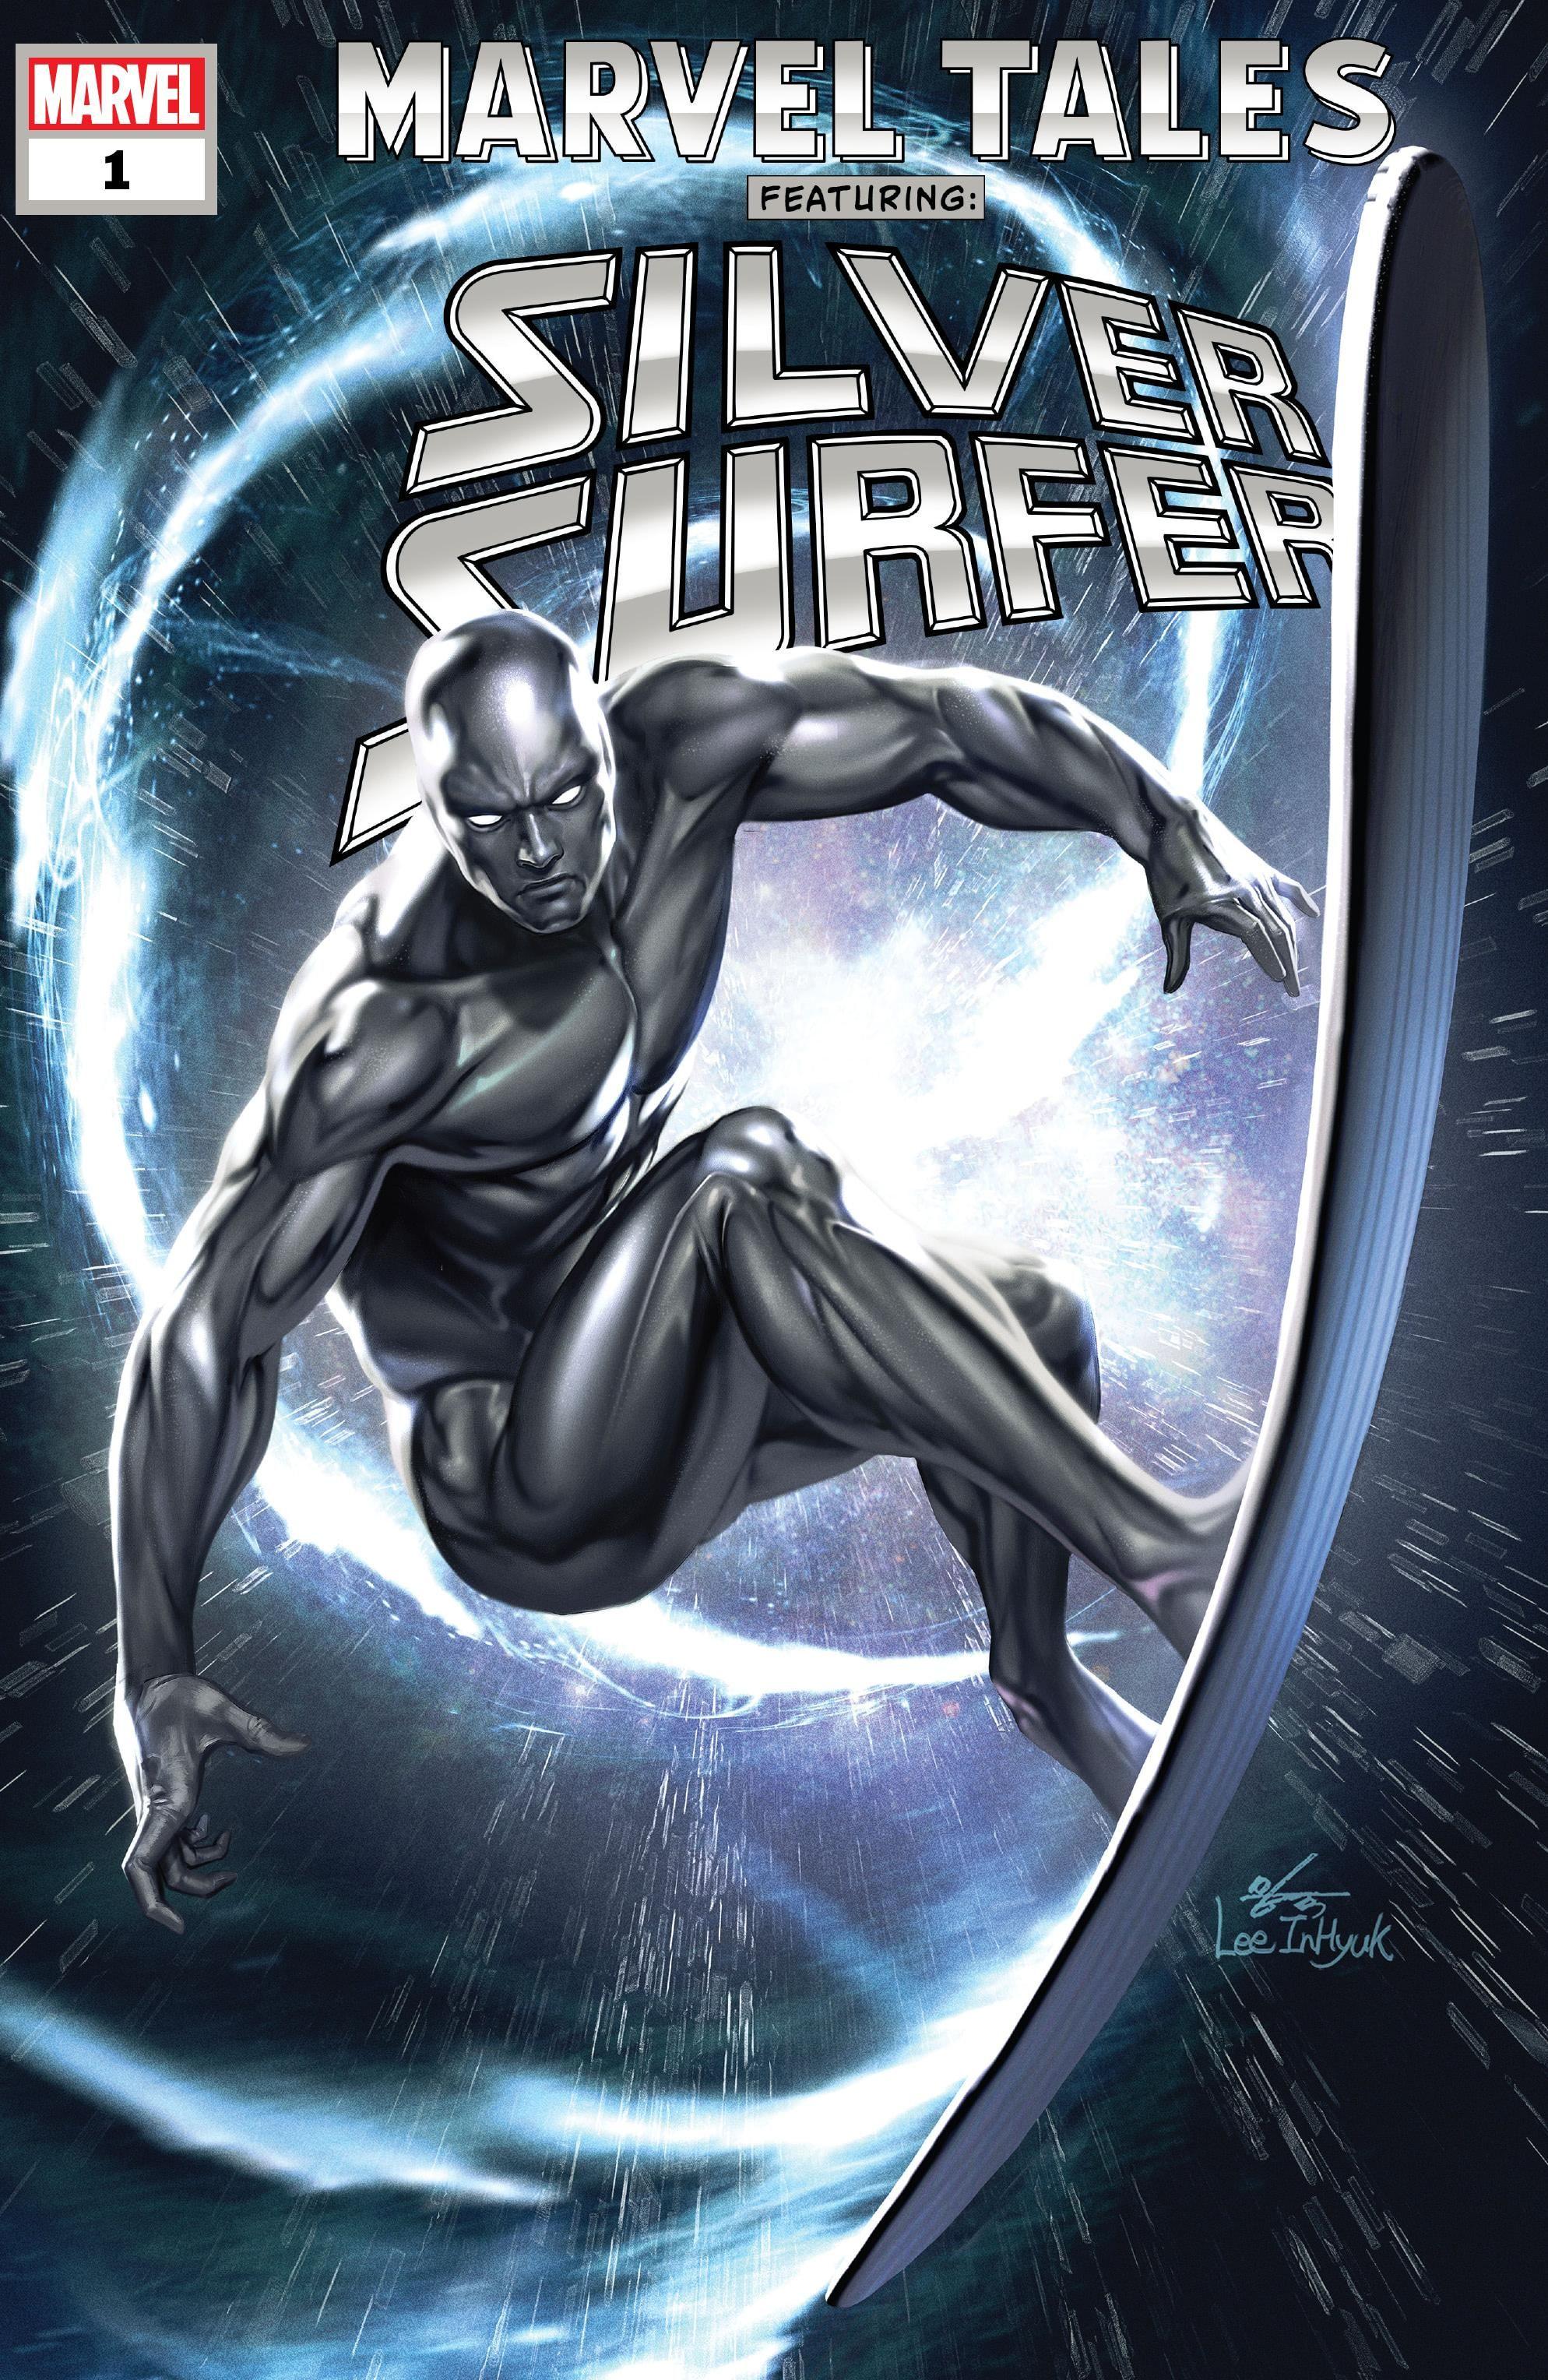 Marvel Tales: Silver Surfer Vol. 1 #1